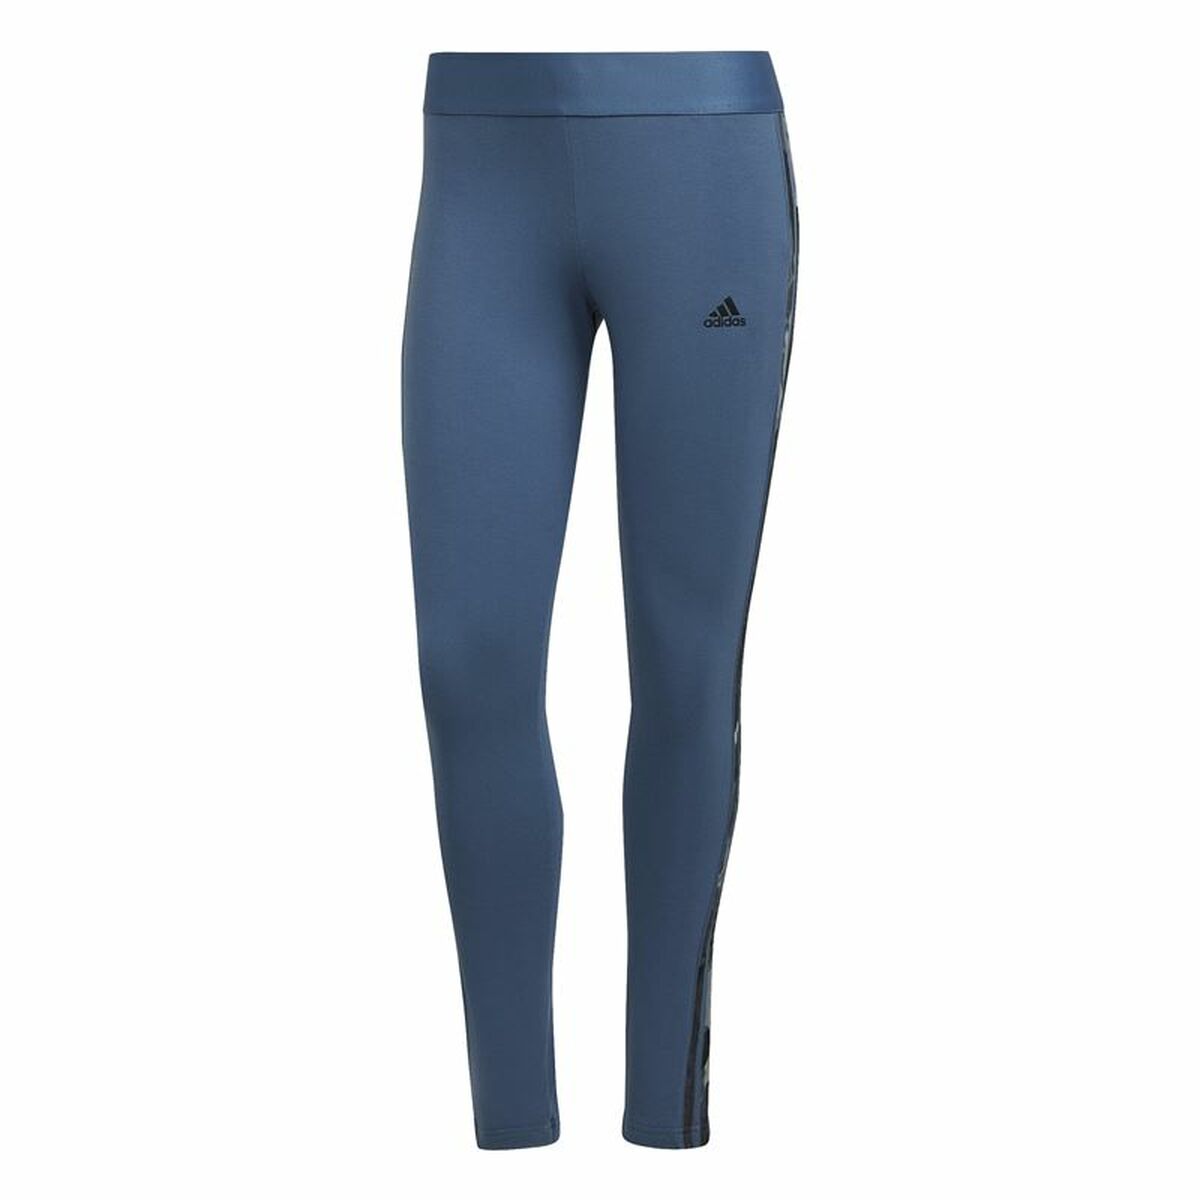 Colanți Sport de Damă Adidas Loungewear Essentials 3 Stripes Albastru - Mărime 2XL